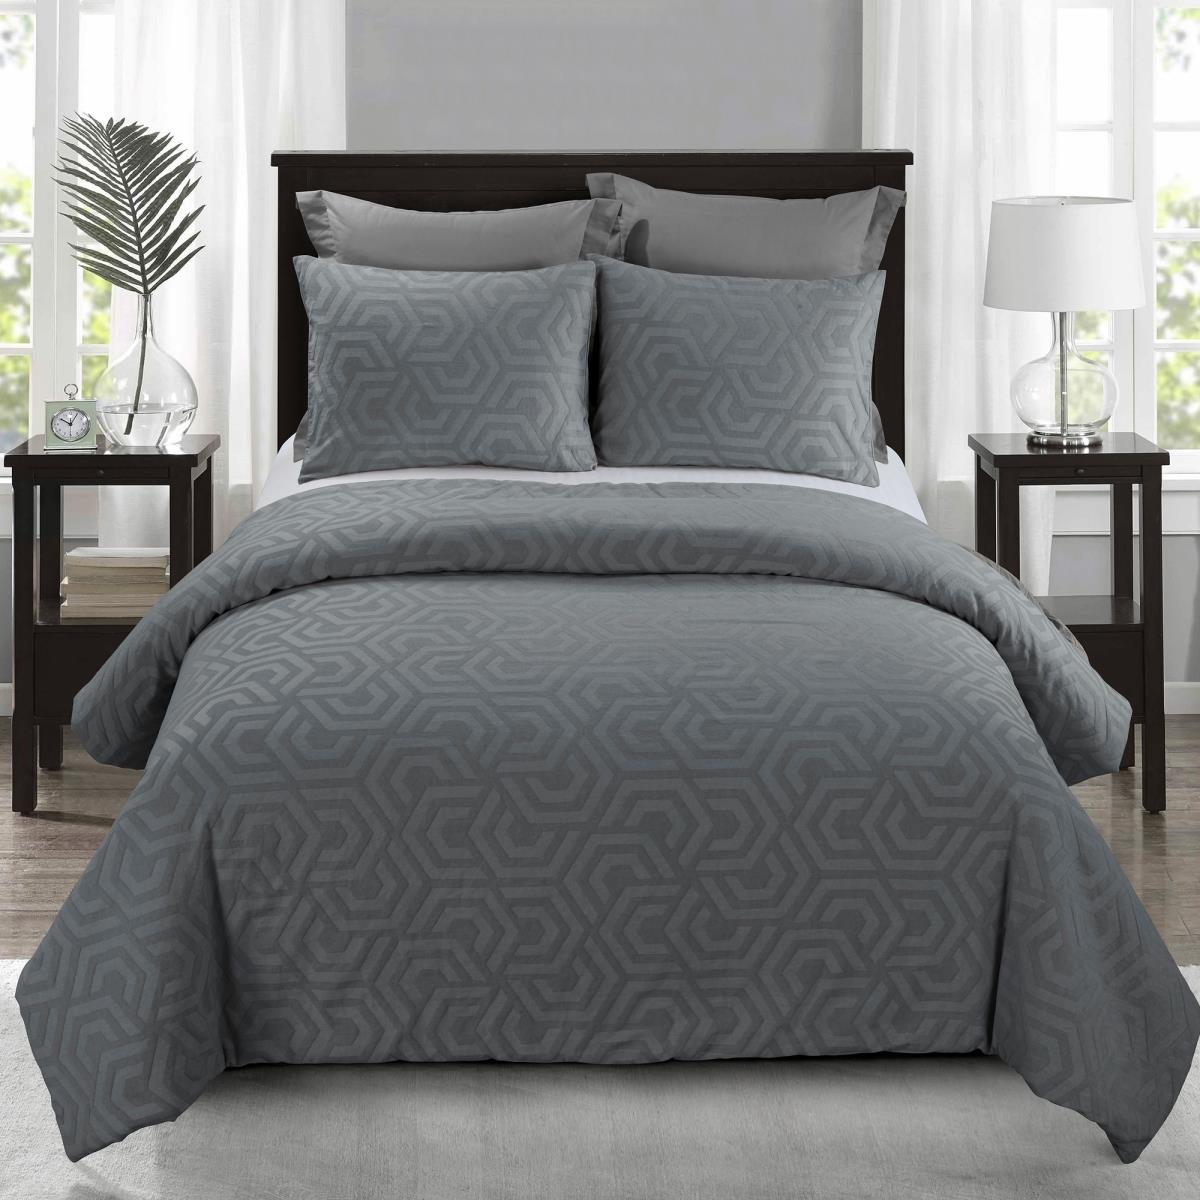 Y00719 King Size Comforter Set - Seville Grey